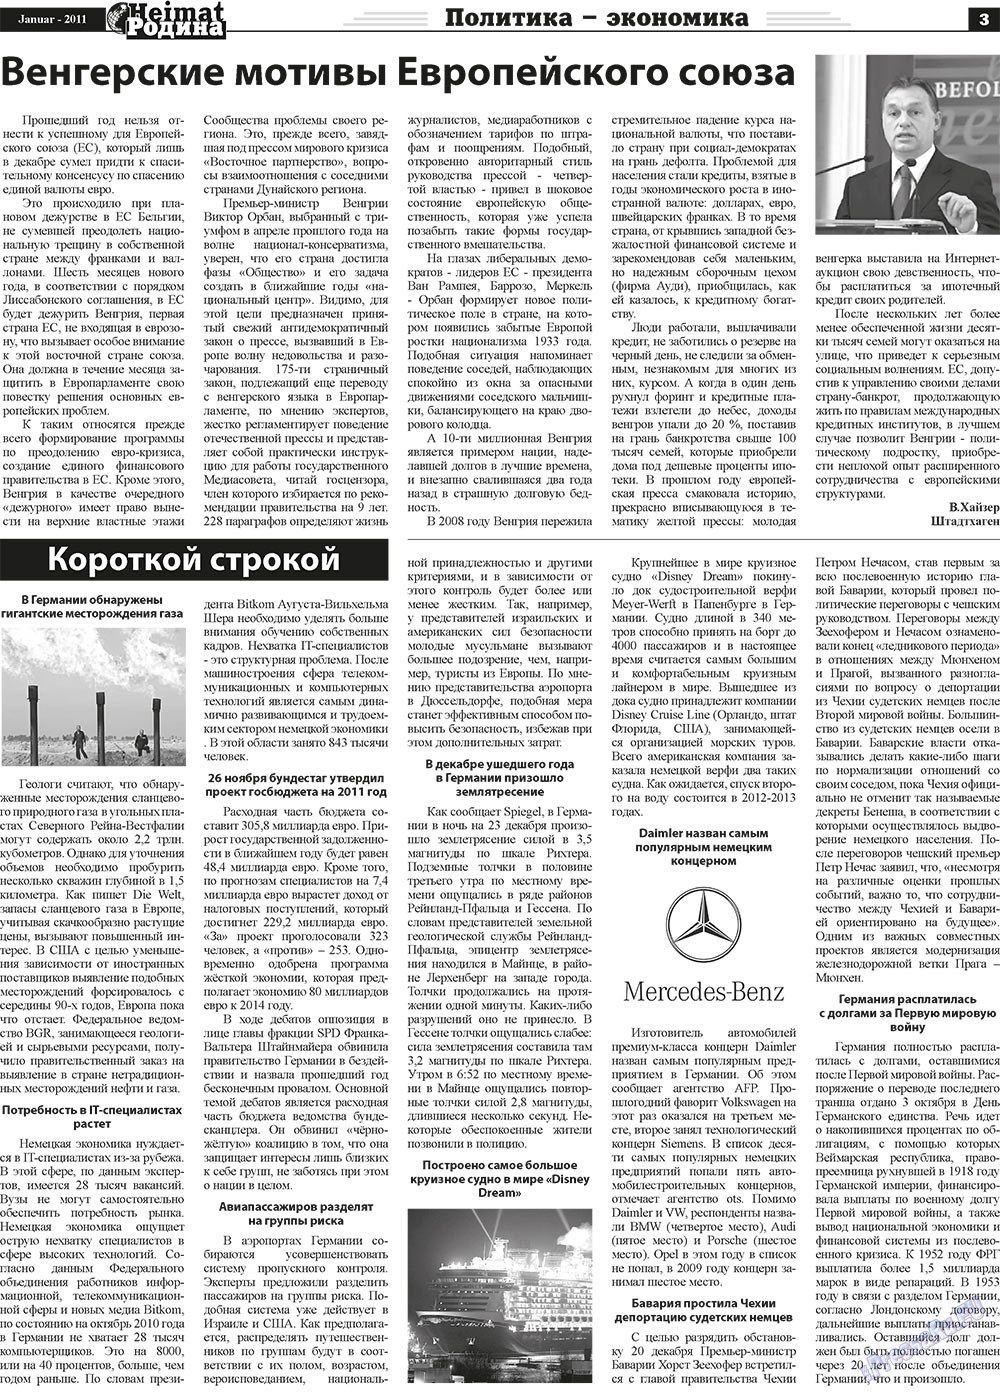 Heimat-Родина (газета). 2011 год, номер 1, стр. 3